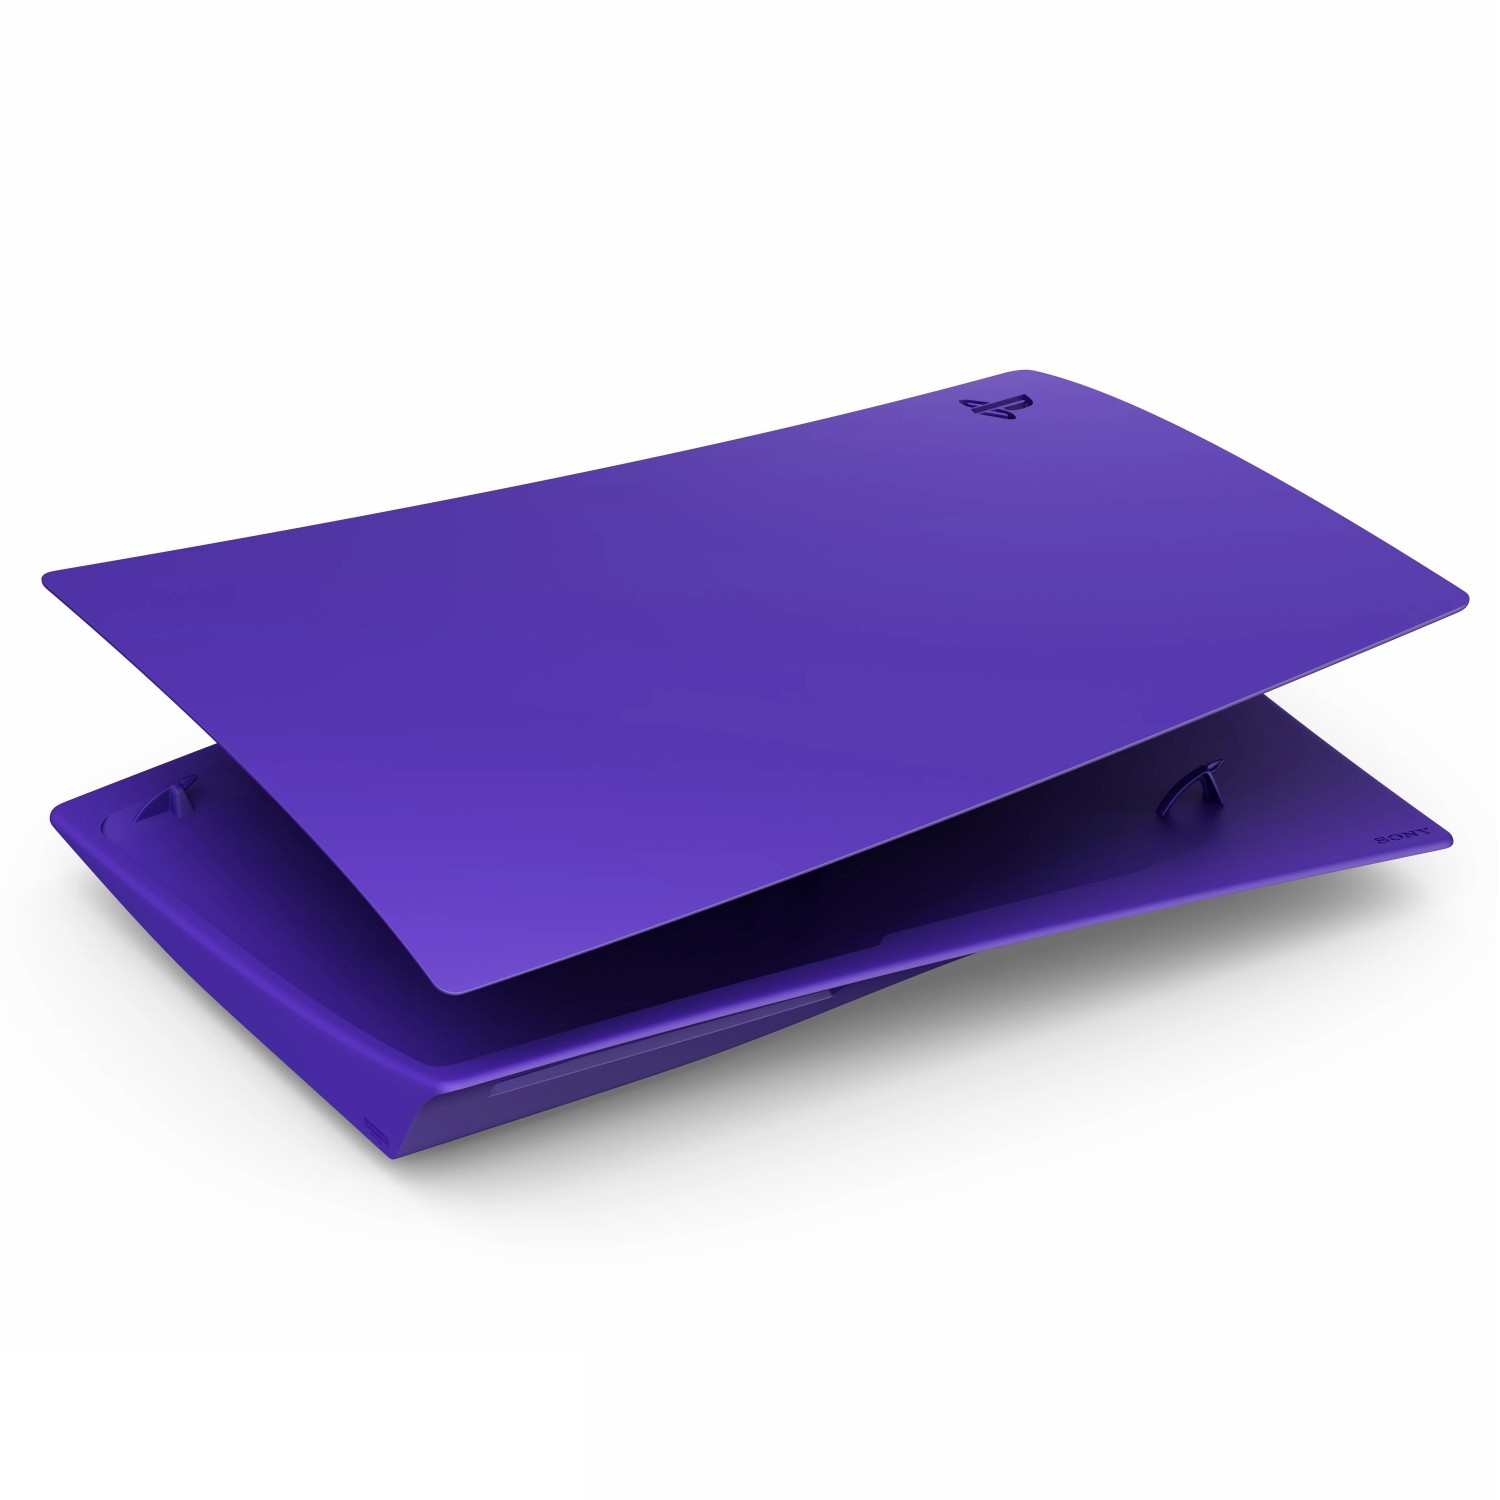 کاور Playstation 5 Standard Edition - Galactic Purple-2